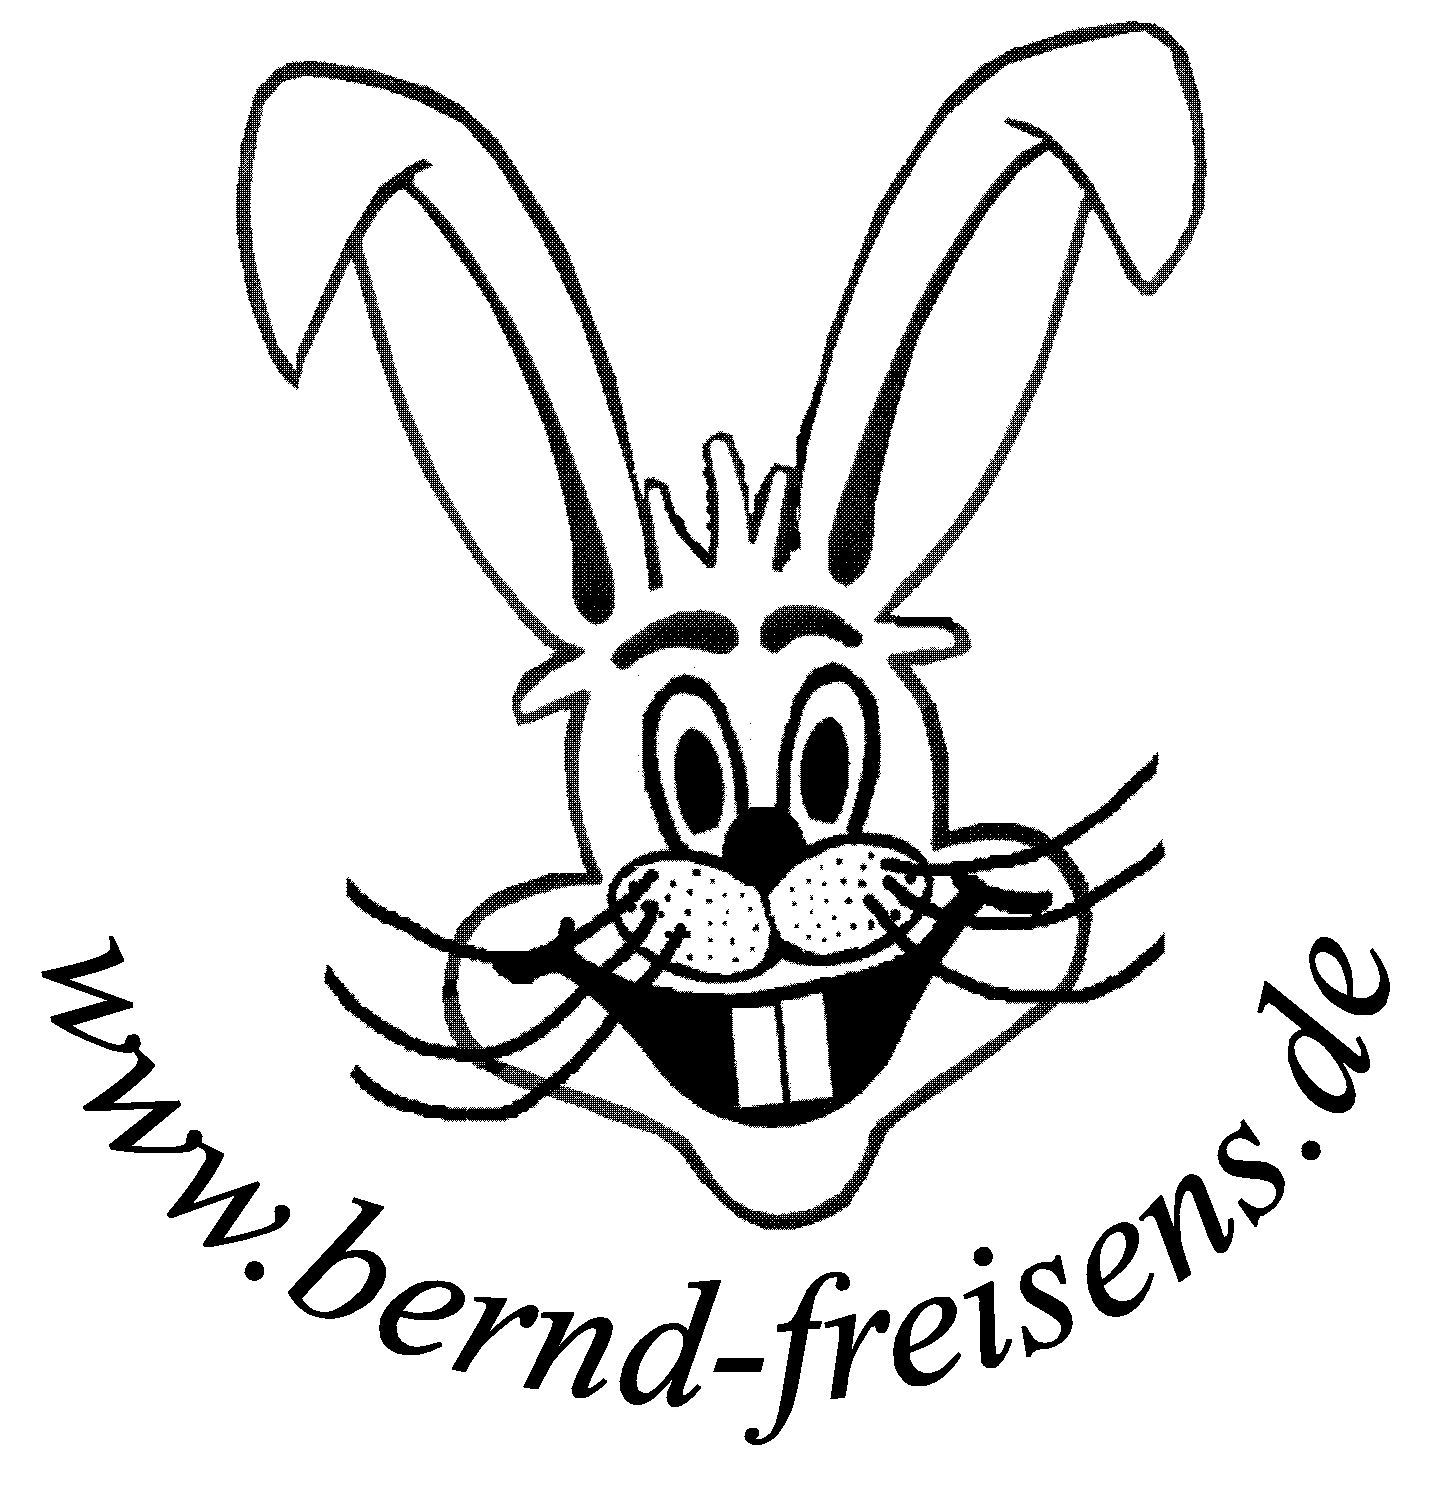 (c) Bernd-freisens.de